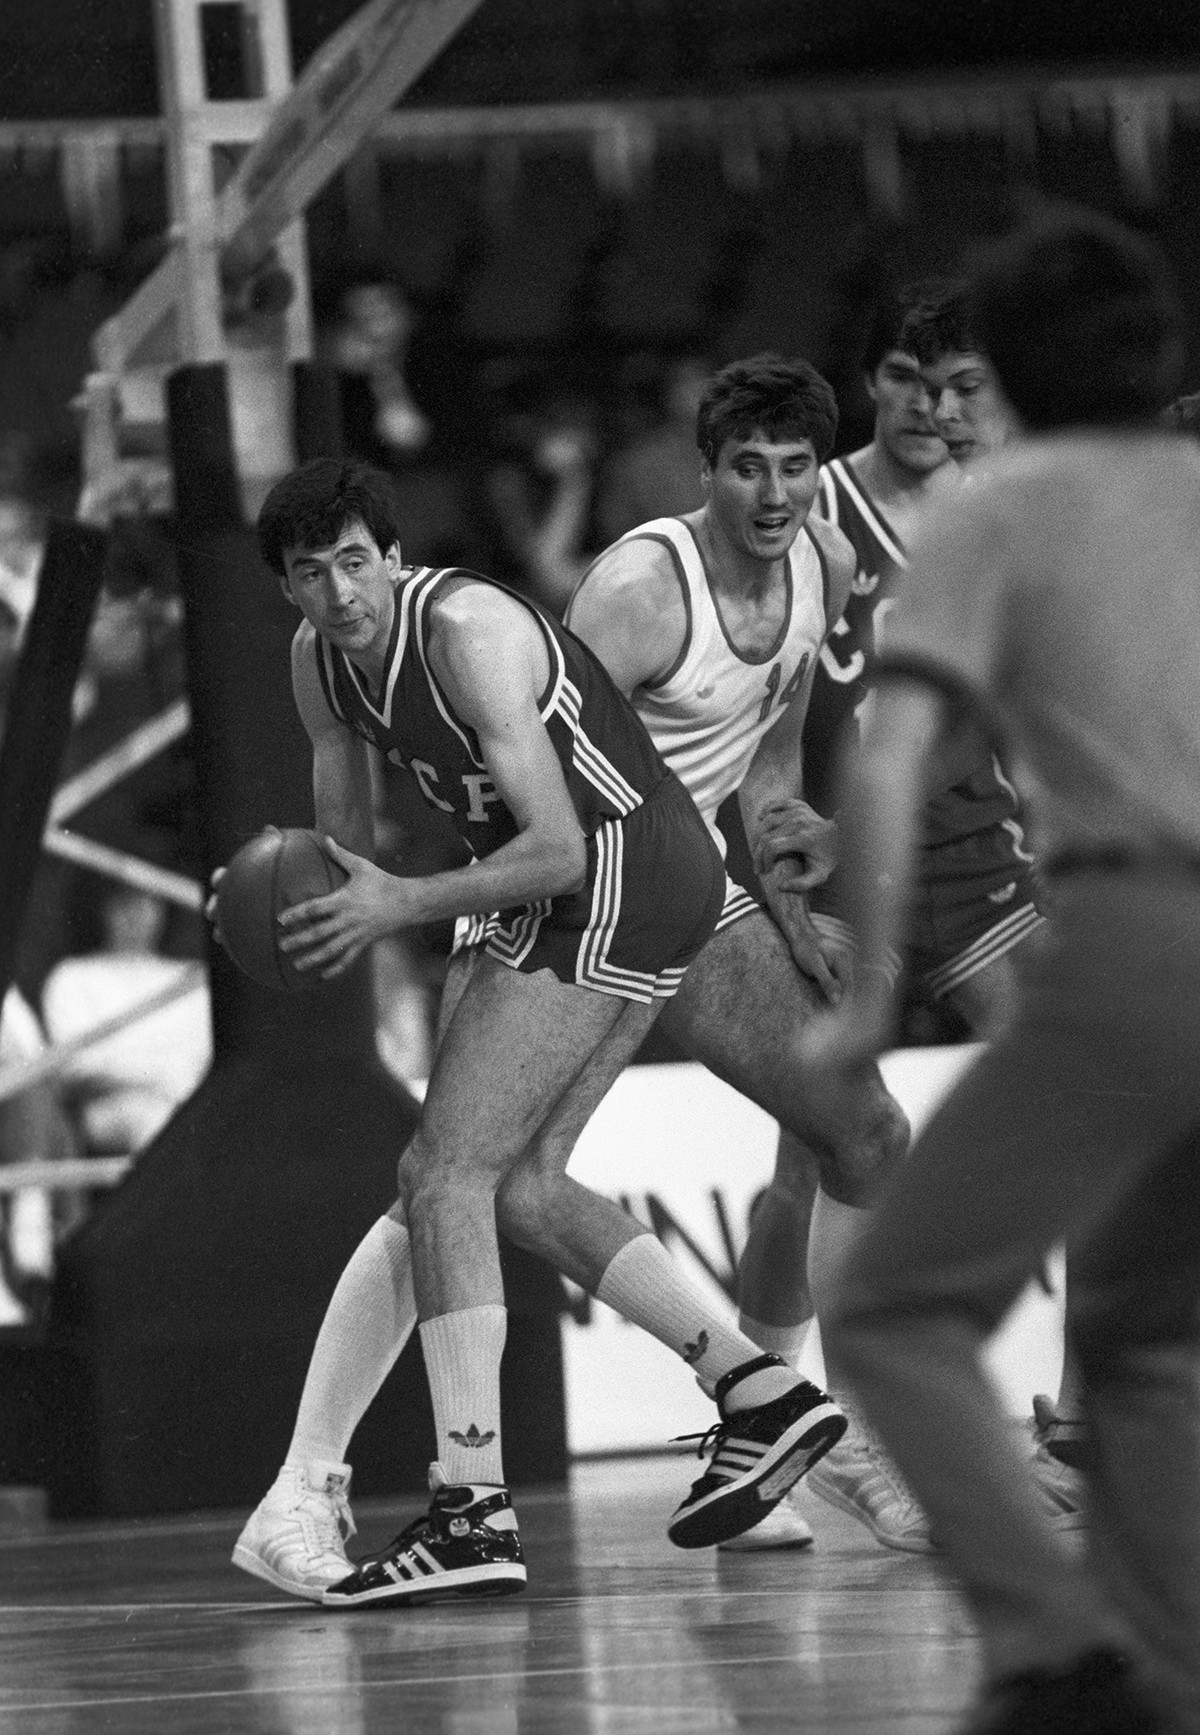 Sovjetski olimpijski prvak Sergej Tarakanov med Evropskim prvenstvom v košarki leta 1985.
